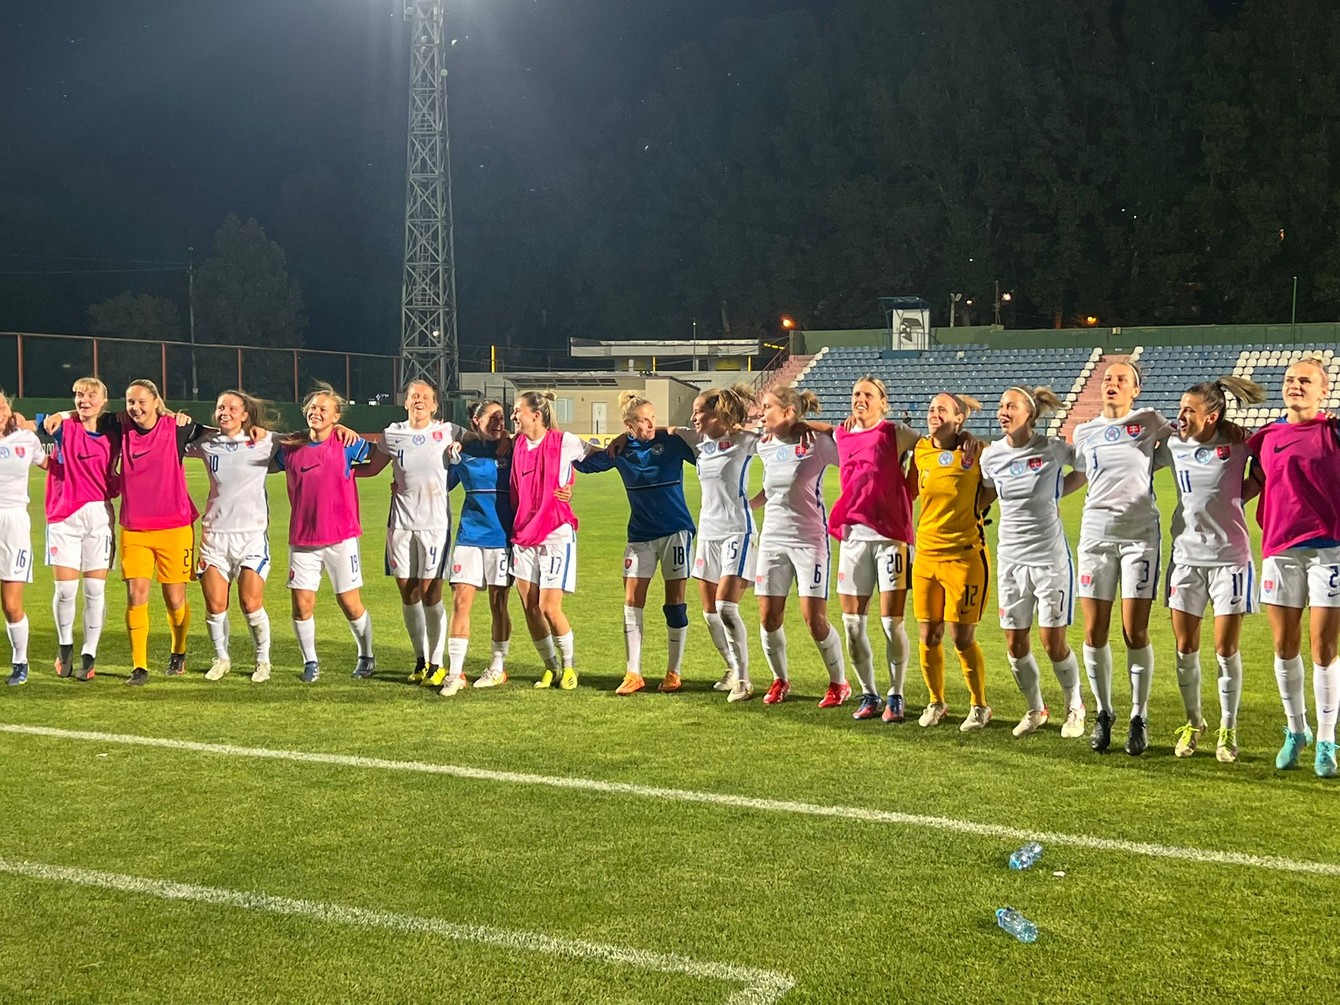 Ďakovačka slovenských reprezentantiek po kvalifikačnom víťazstve v Gruzínsku.